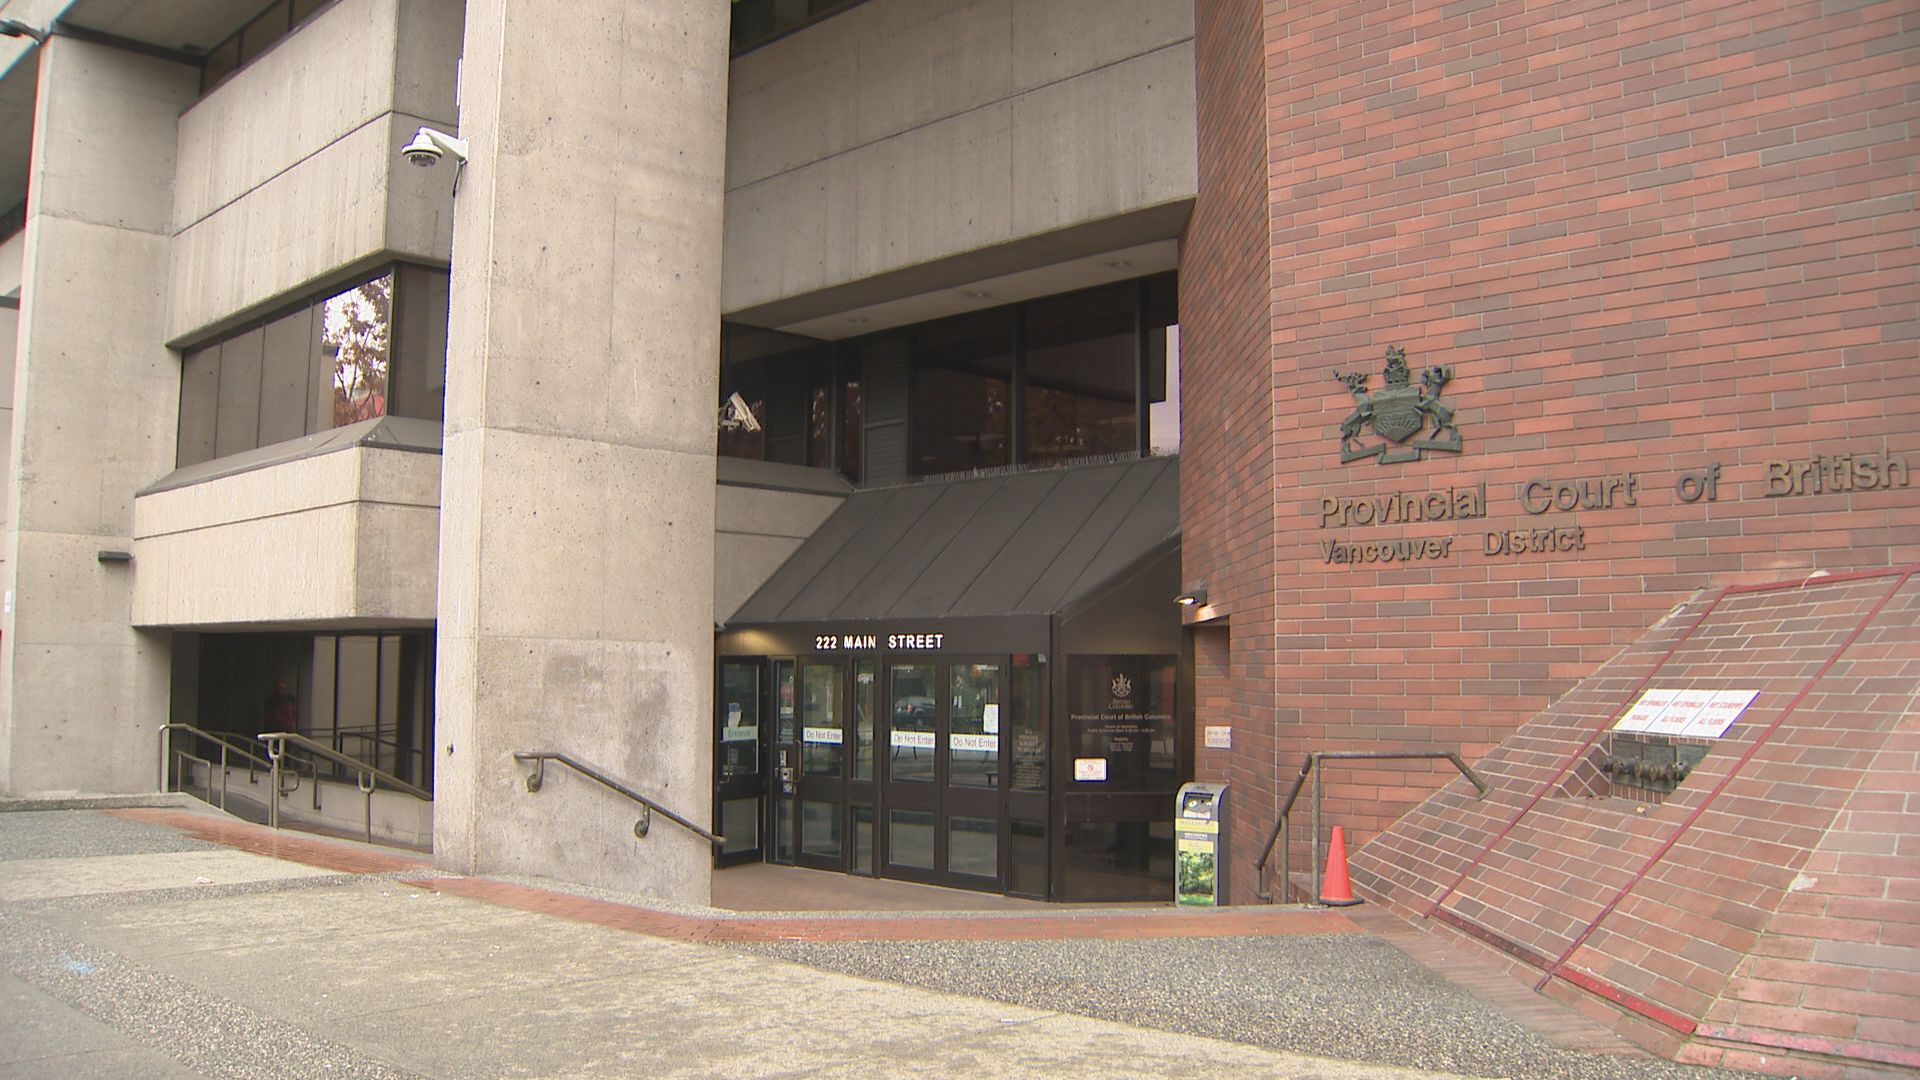 埃比表示温哥华法院不会搬迁